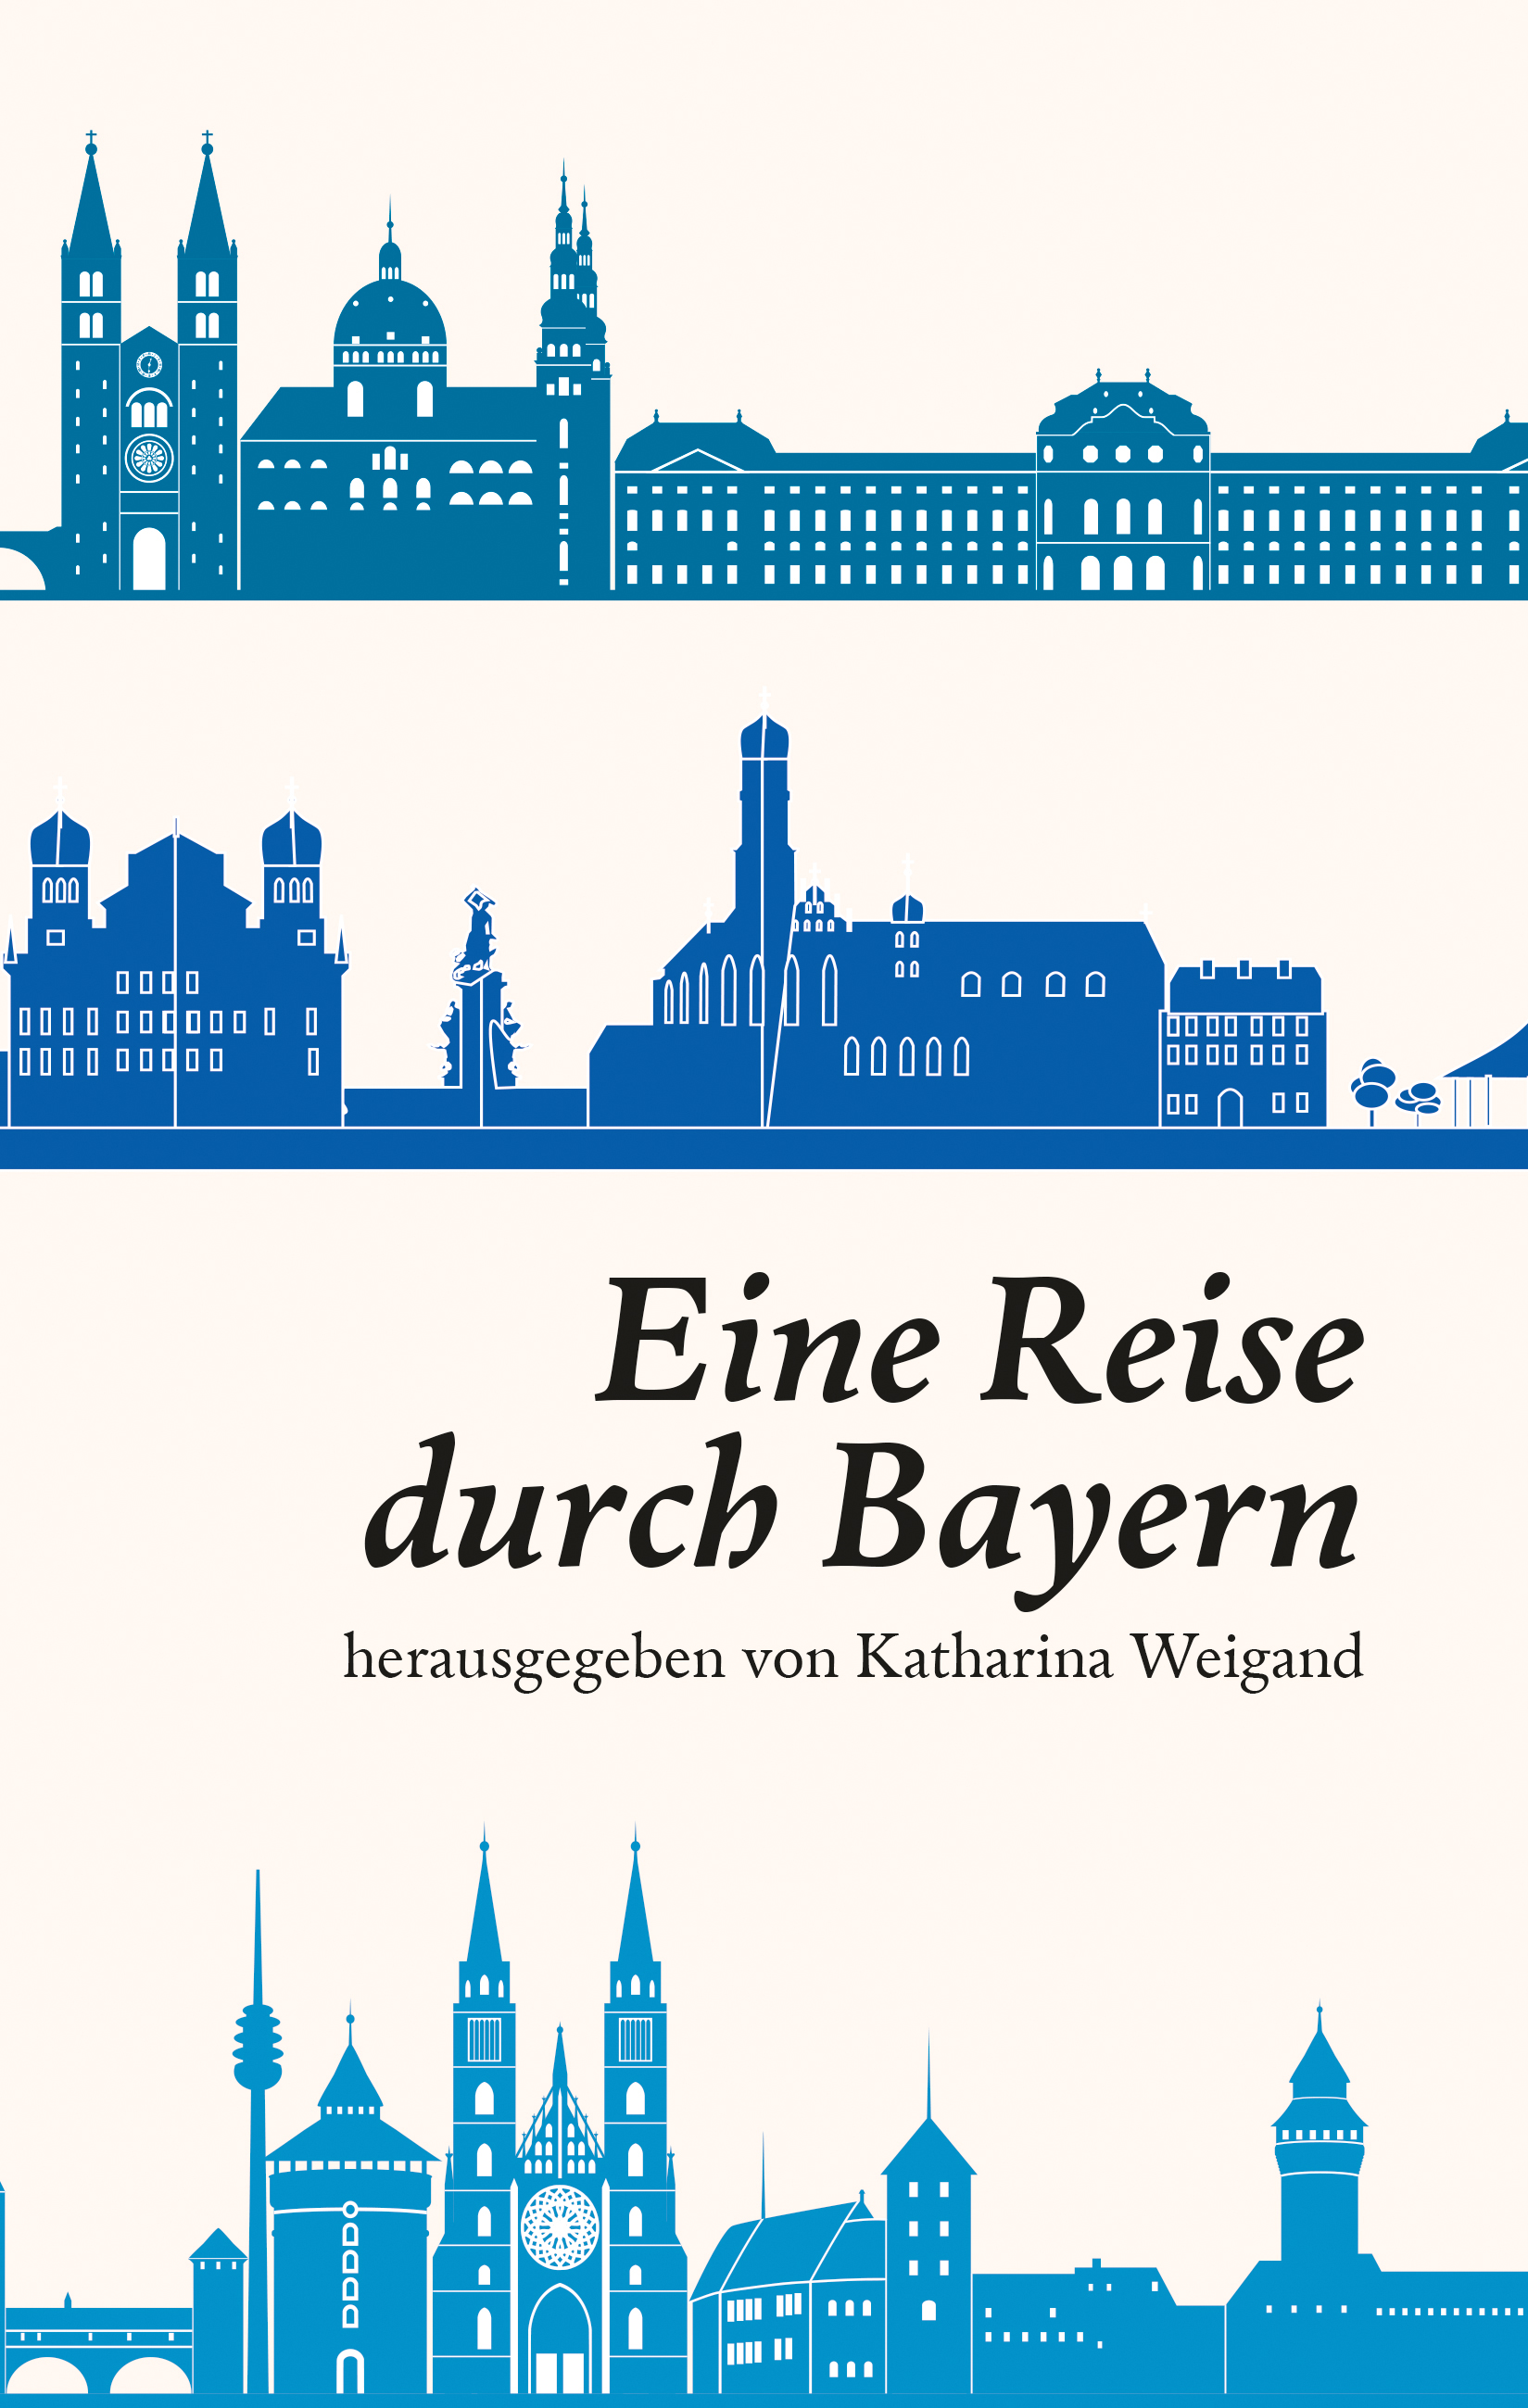 Eine Reise durch Bayern. Bavaristische Ringvorlesung, hrsg. von Katharina Weigand, 548 S.
utzverlag GmbH, München 2020
ISBN 978-3-8316-4859-7
39,00 €